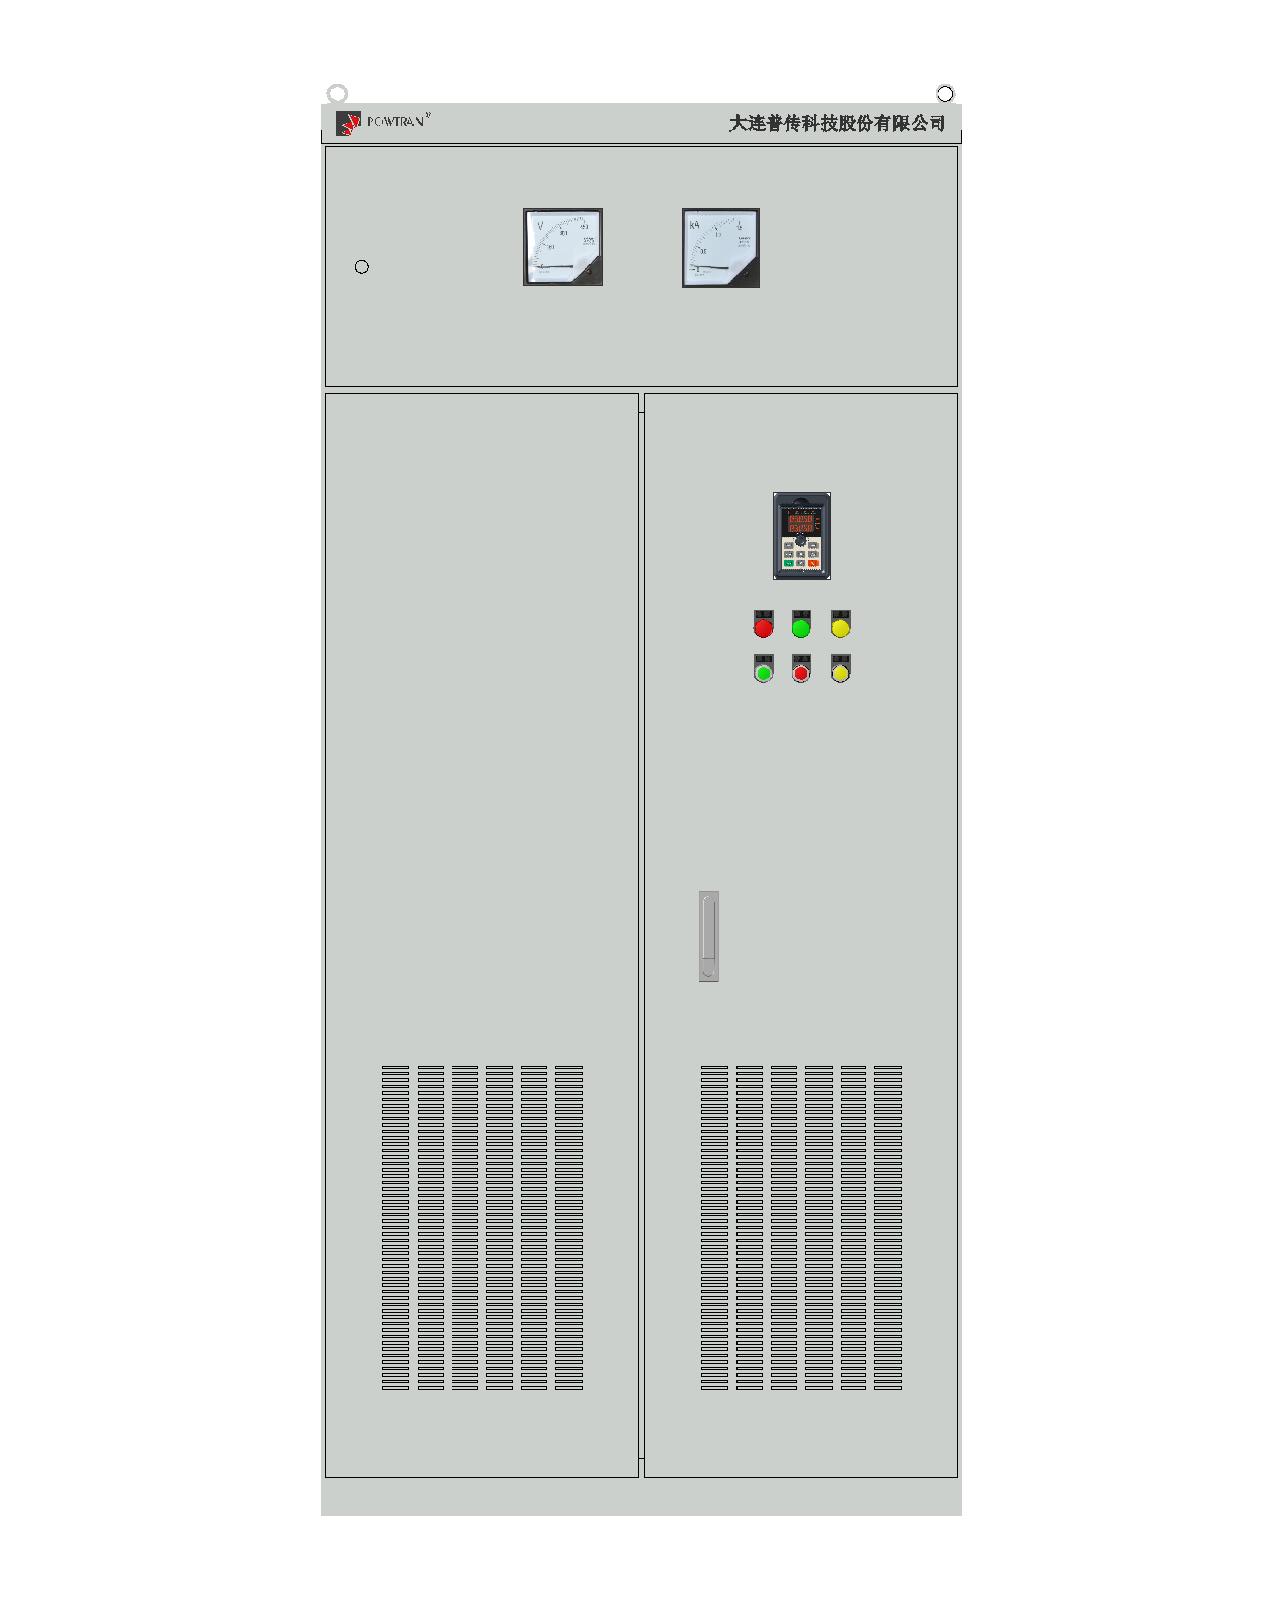 PS9500系列电机控制一体化柜